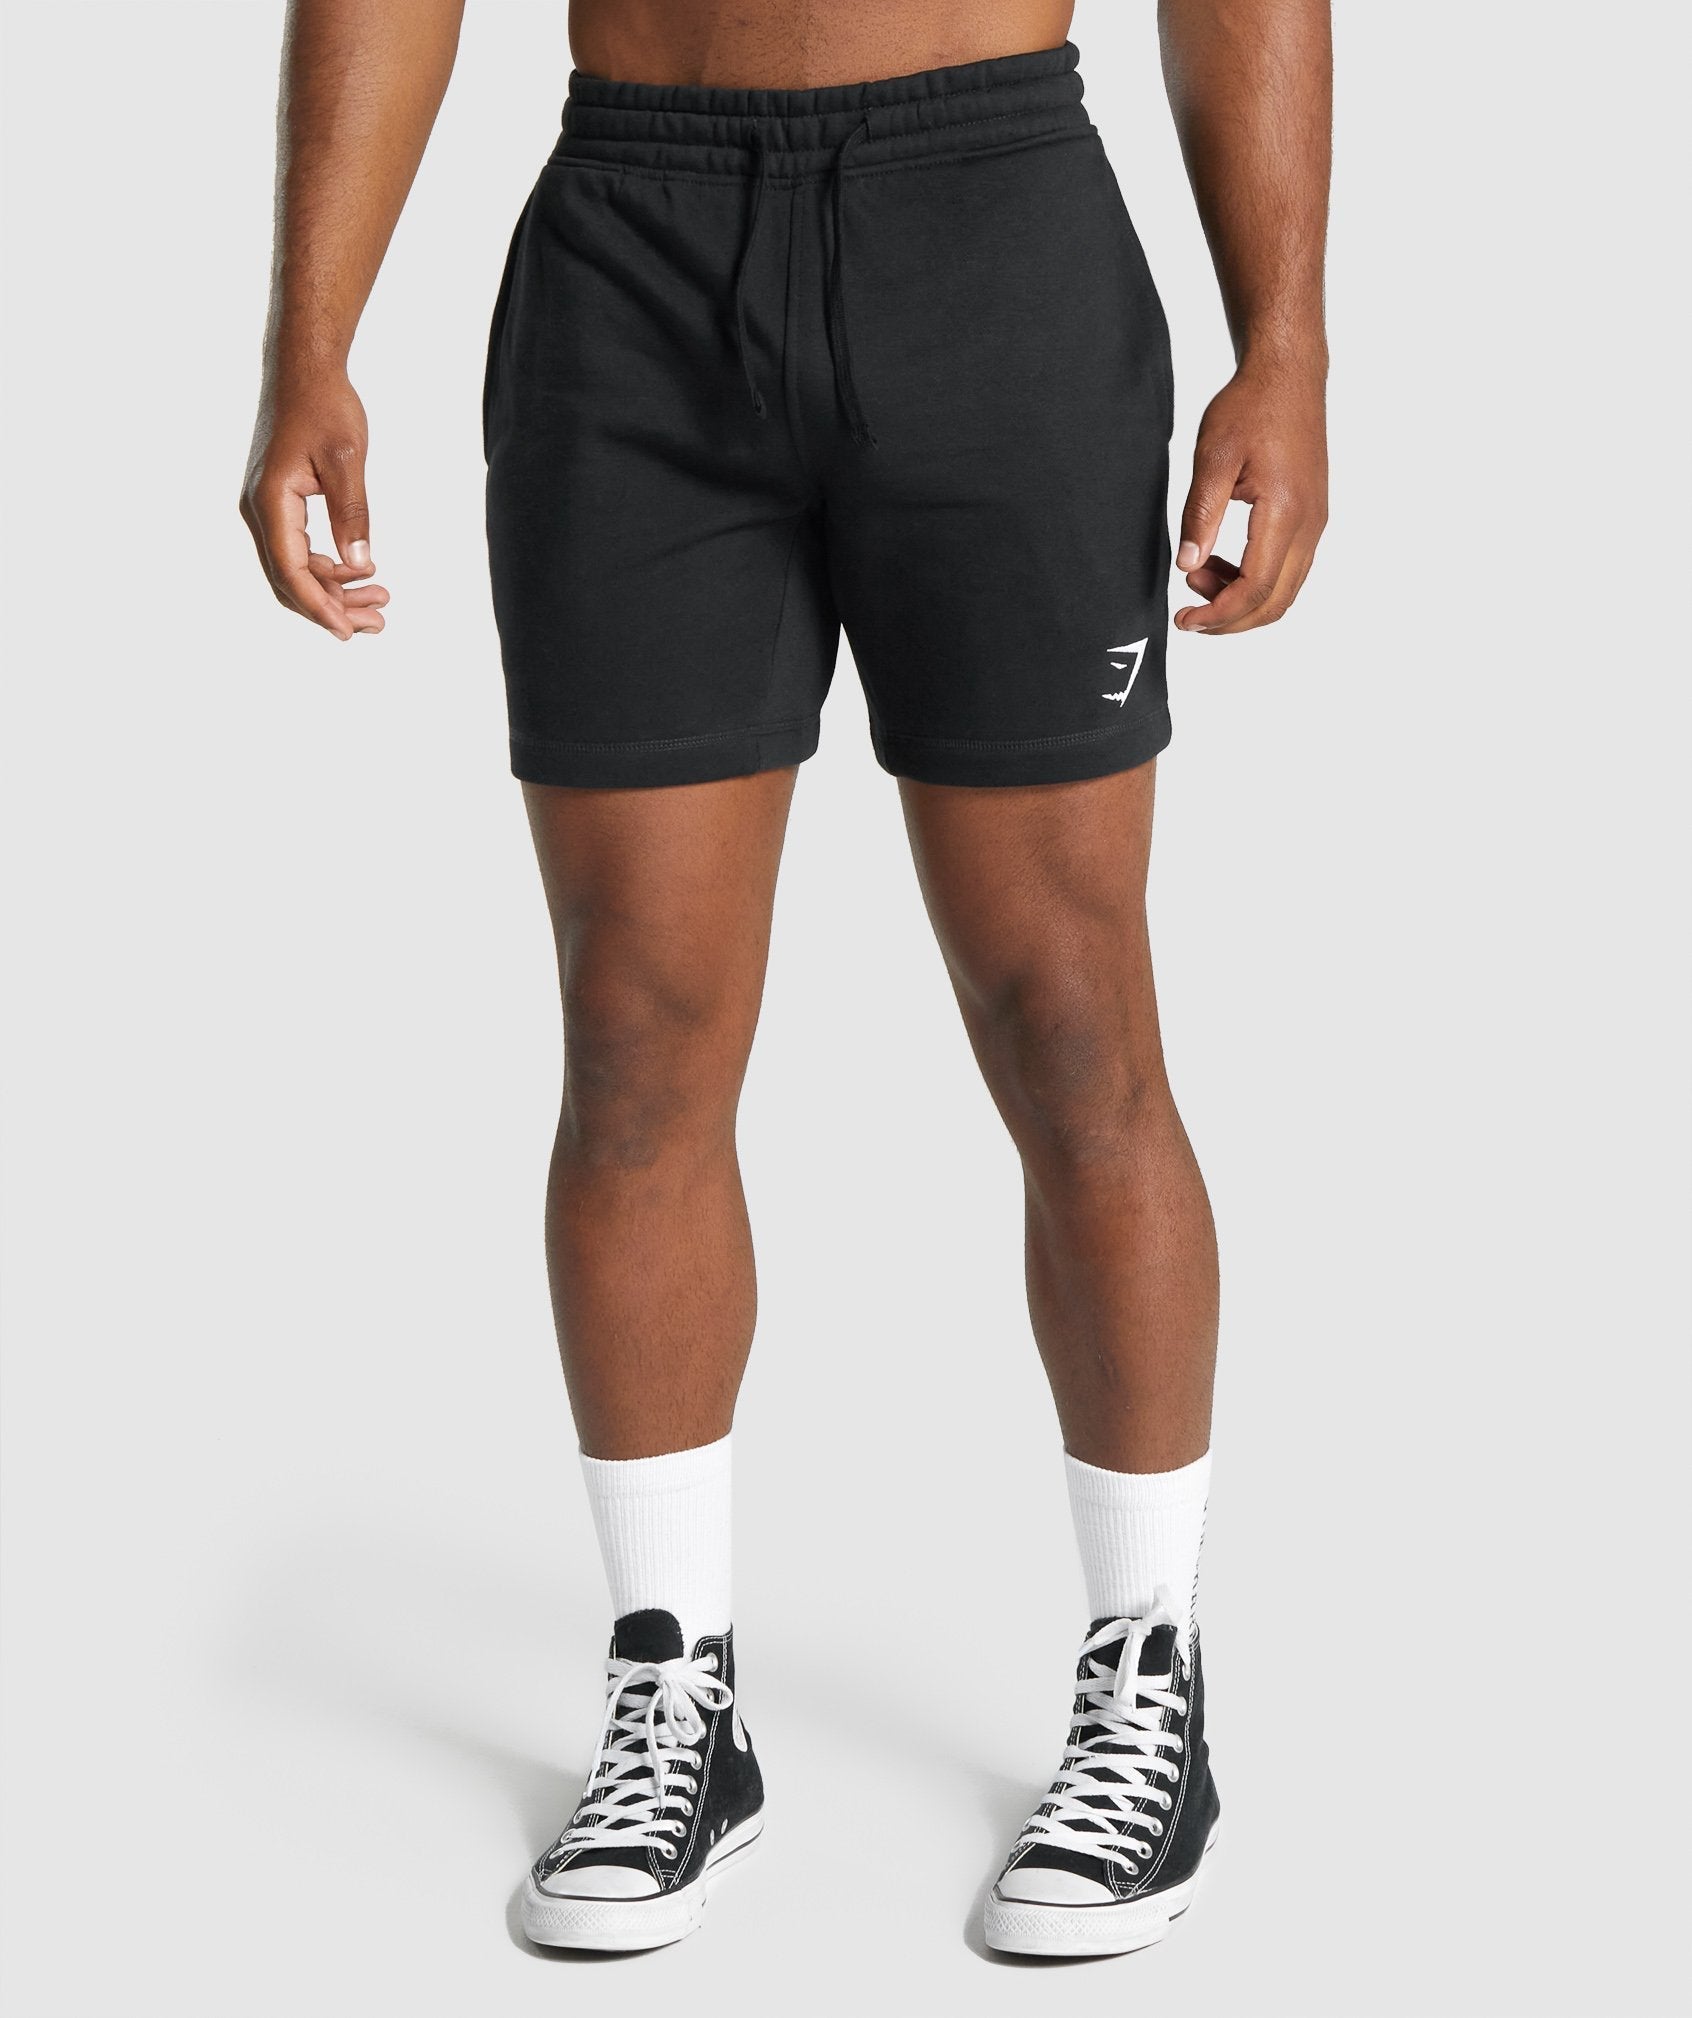 Gymshark Crest Shorts - Black